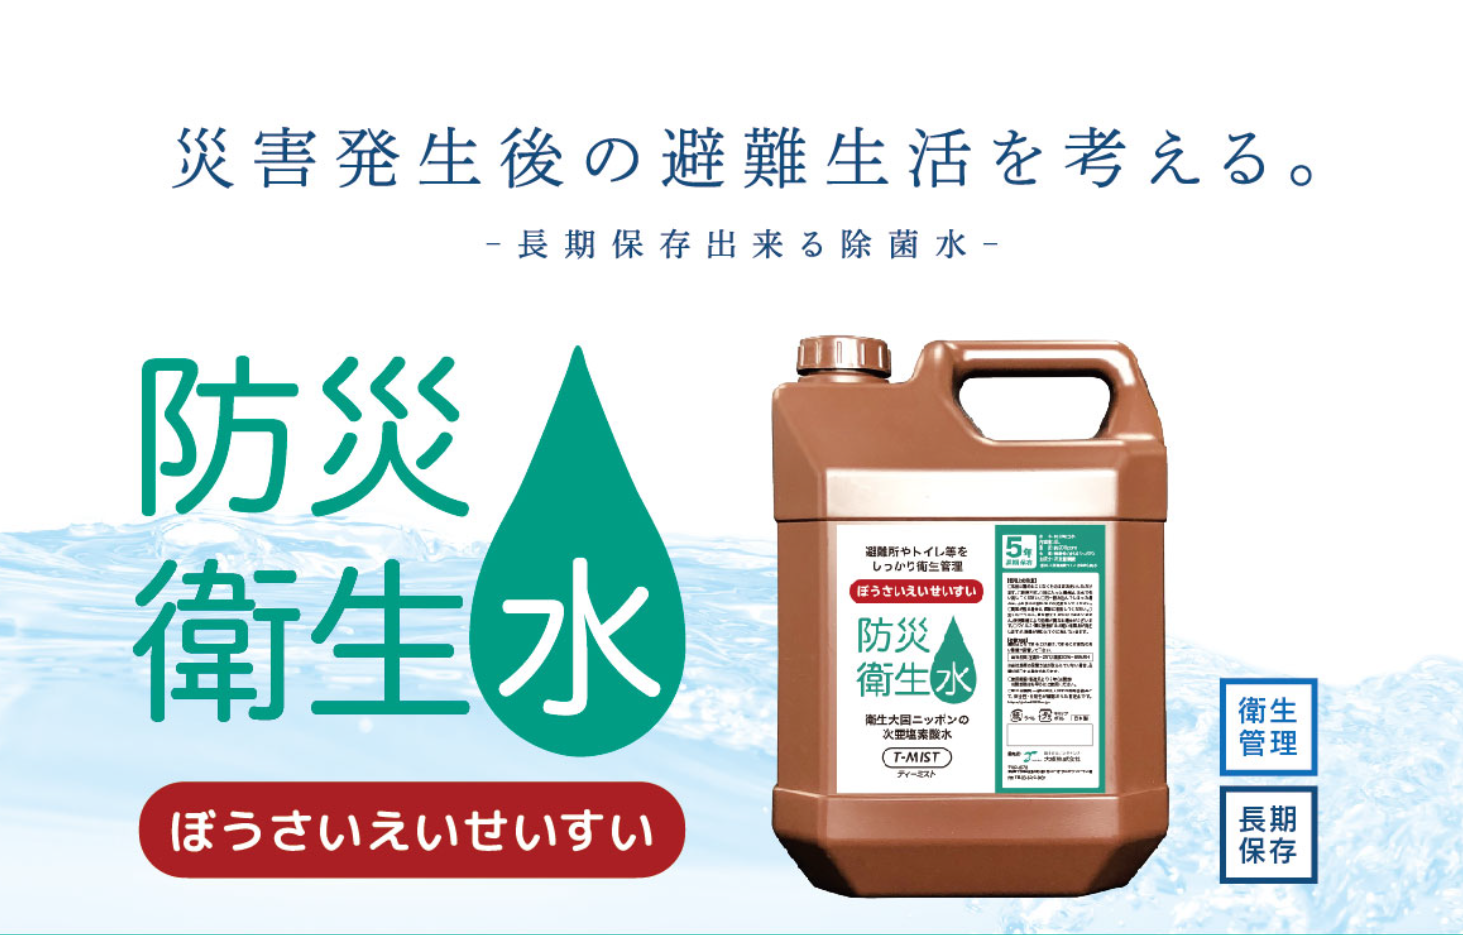 茨城県つくば市の核シェルターモデルルームにおいて 防災衛生水「T-MIST」が採用